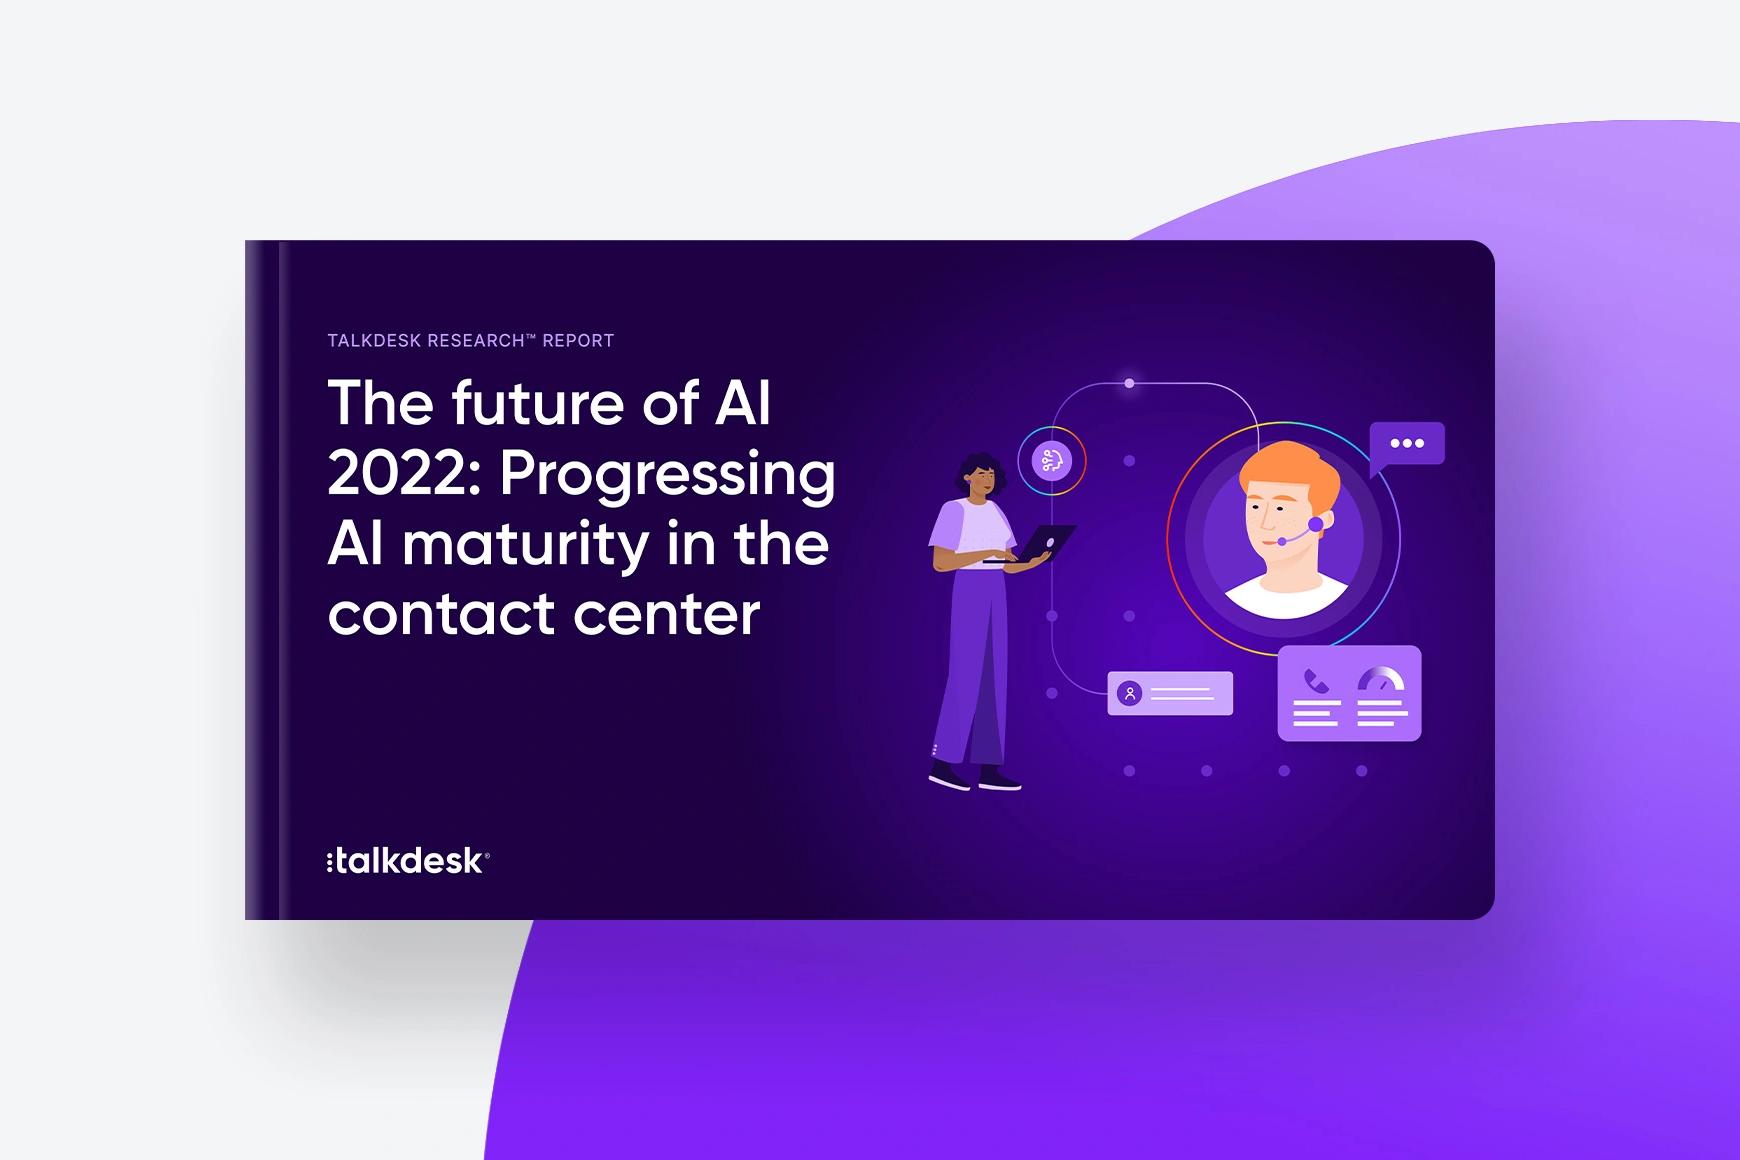 Il futuro dell'IA 2022: I progressi della maturazione dell'IA nel contact center